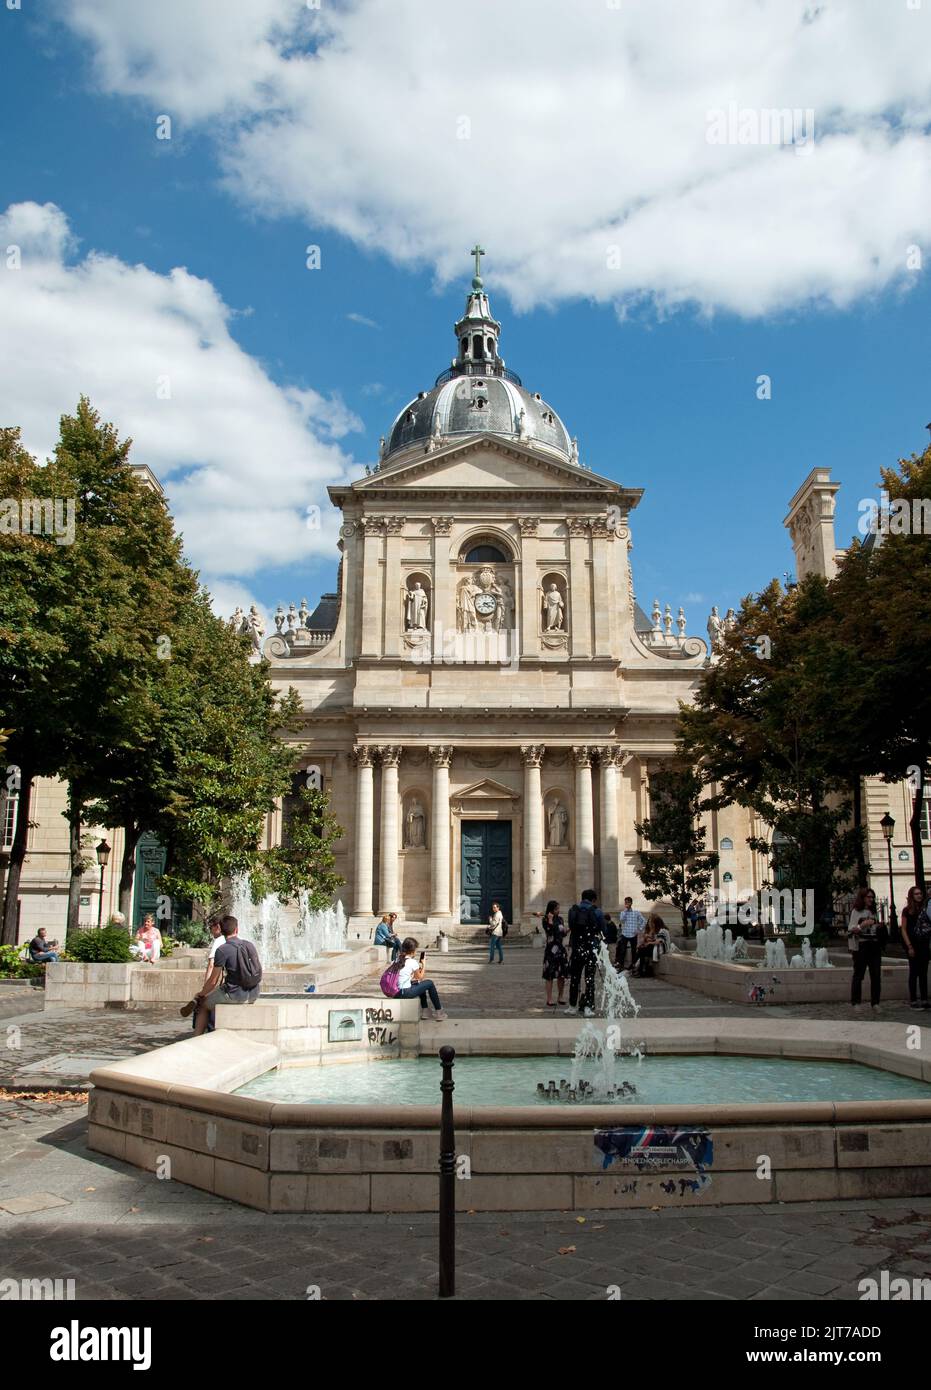 La Sorbona - Università di Parigi, Parigi, Francia. Una delle università più antiche d'Europa. Foto Stock